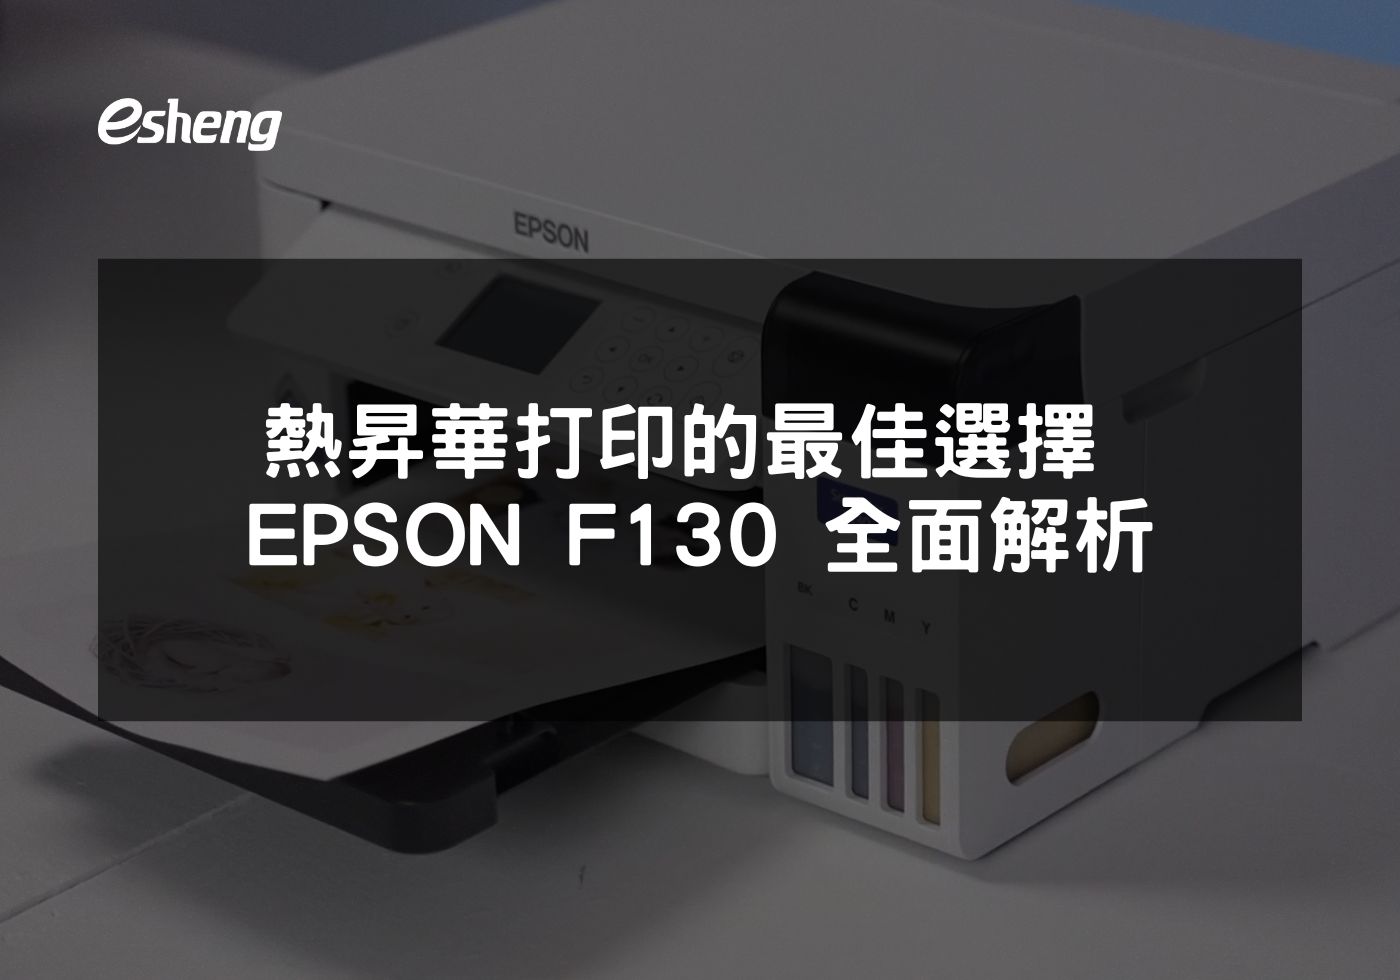 熱昇華打印的最佳選擇 EPSON SureColor F130 全面解析